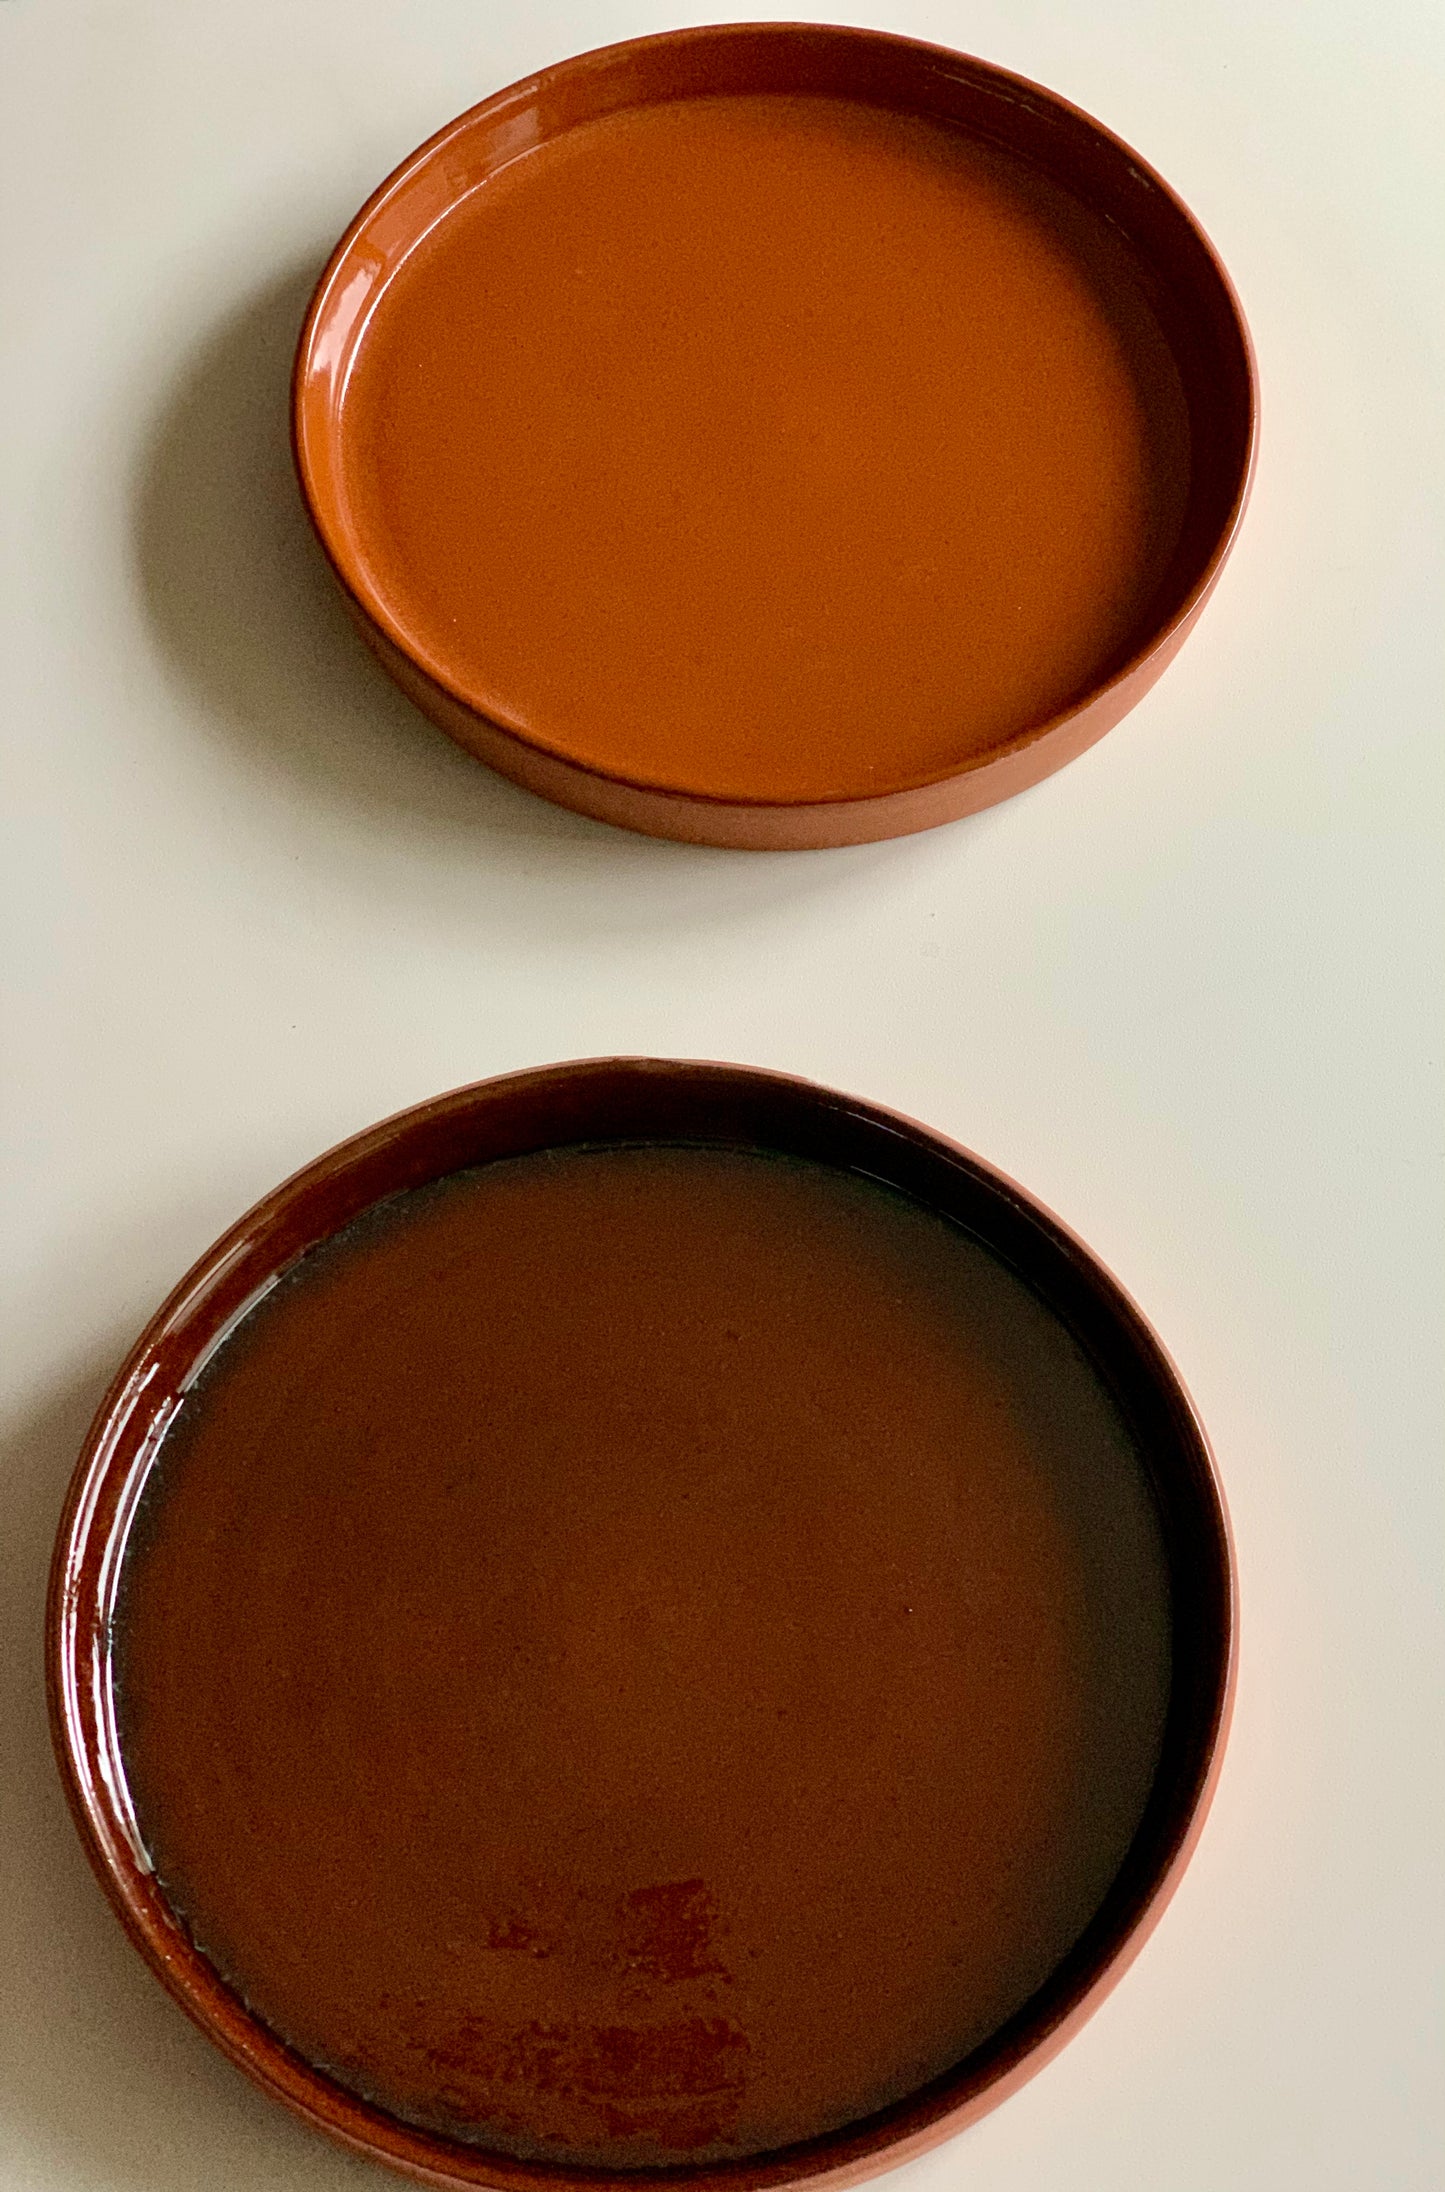 Marokkaans aardewerk borden. Prachtige unieke Marokkaans aardewerken borden. Terracotta kleur en donker bruin. Zijn uniek. Zeer leuk om met andere borden te combineren. 100% handmade.